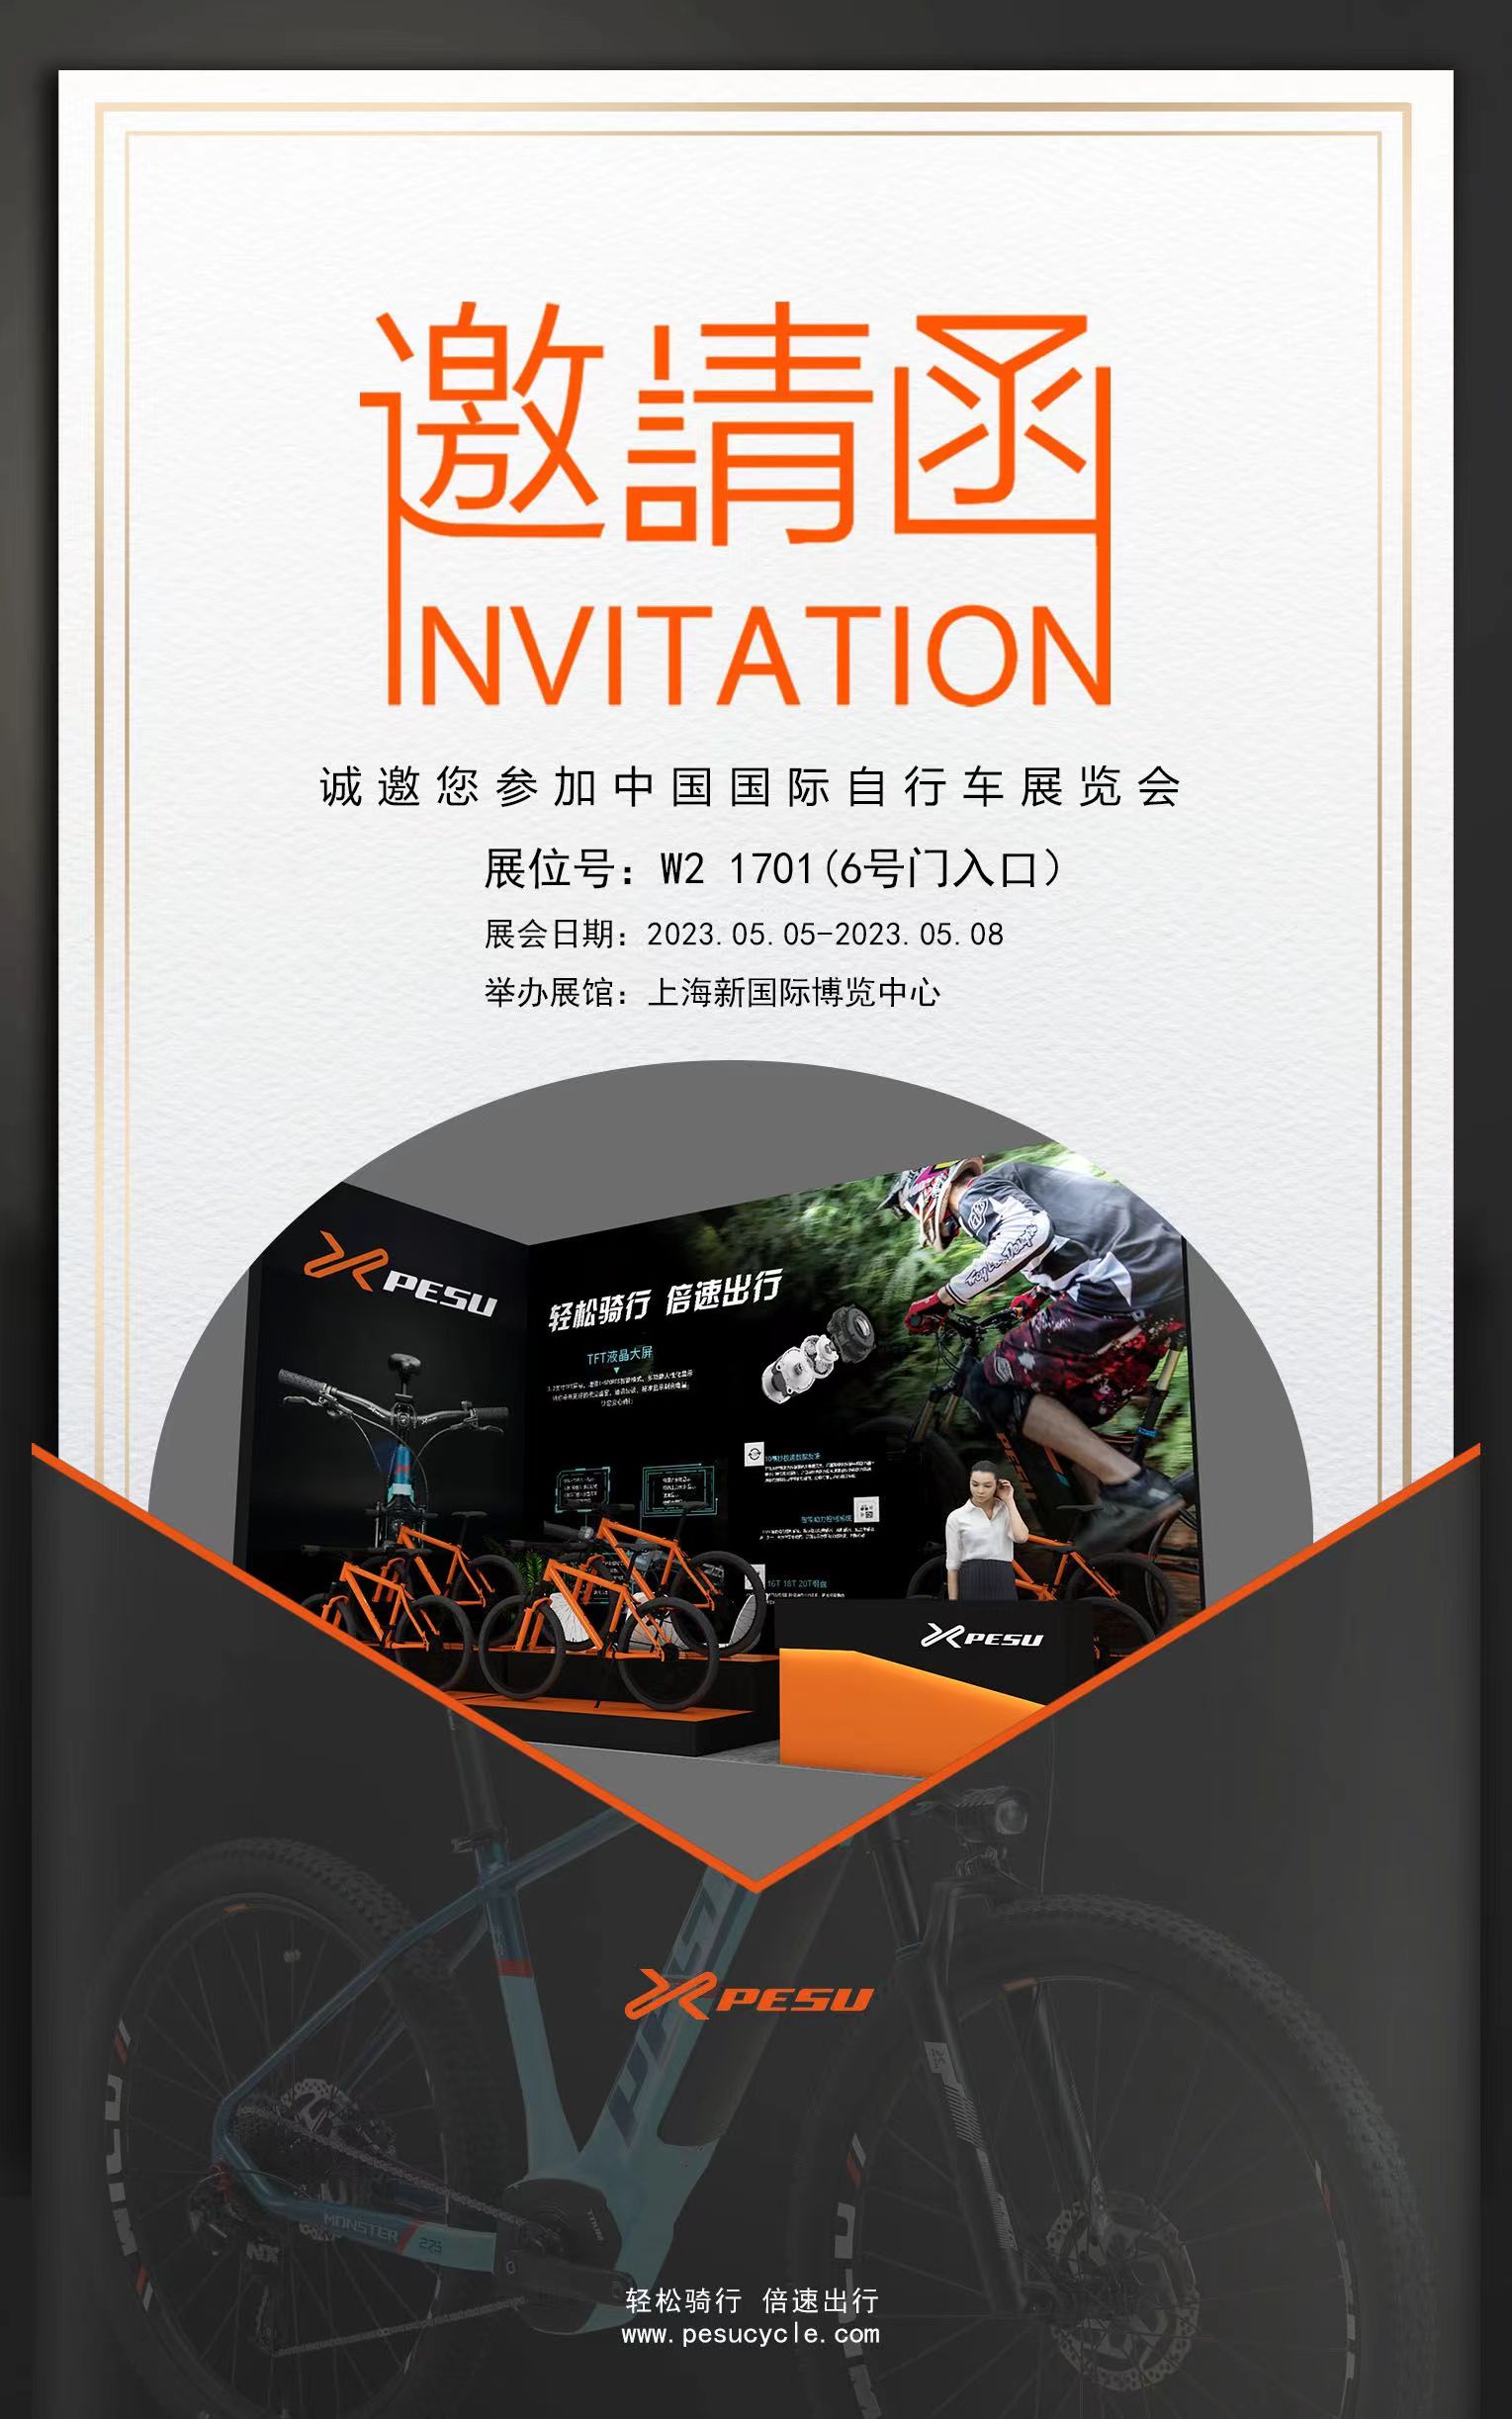 倍速出行将参加第三十一届中国国际自行车展览会